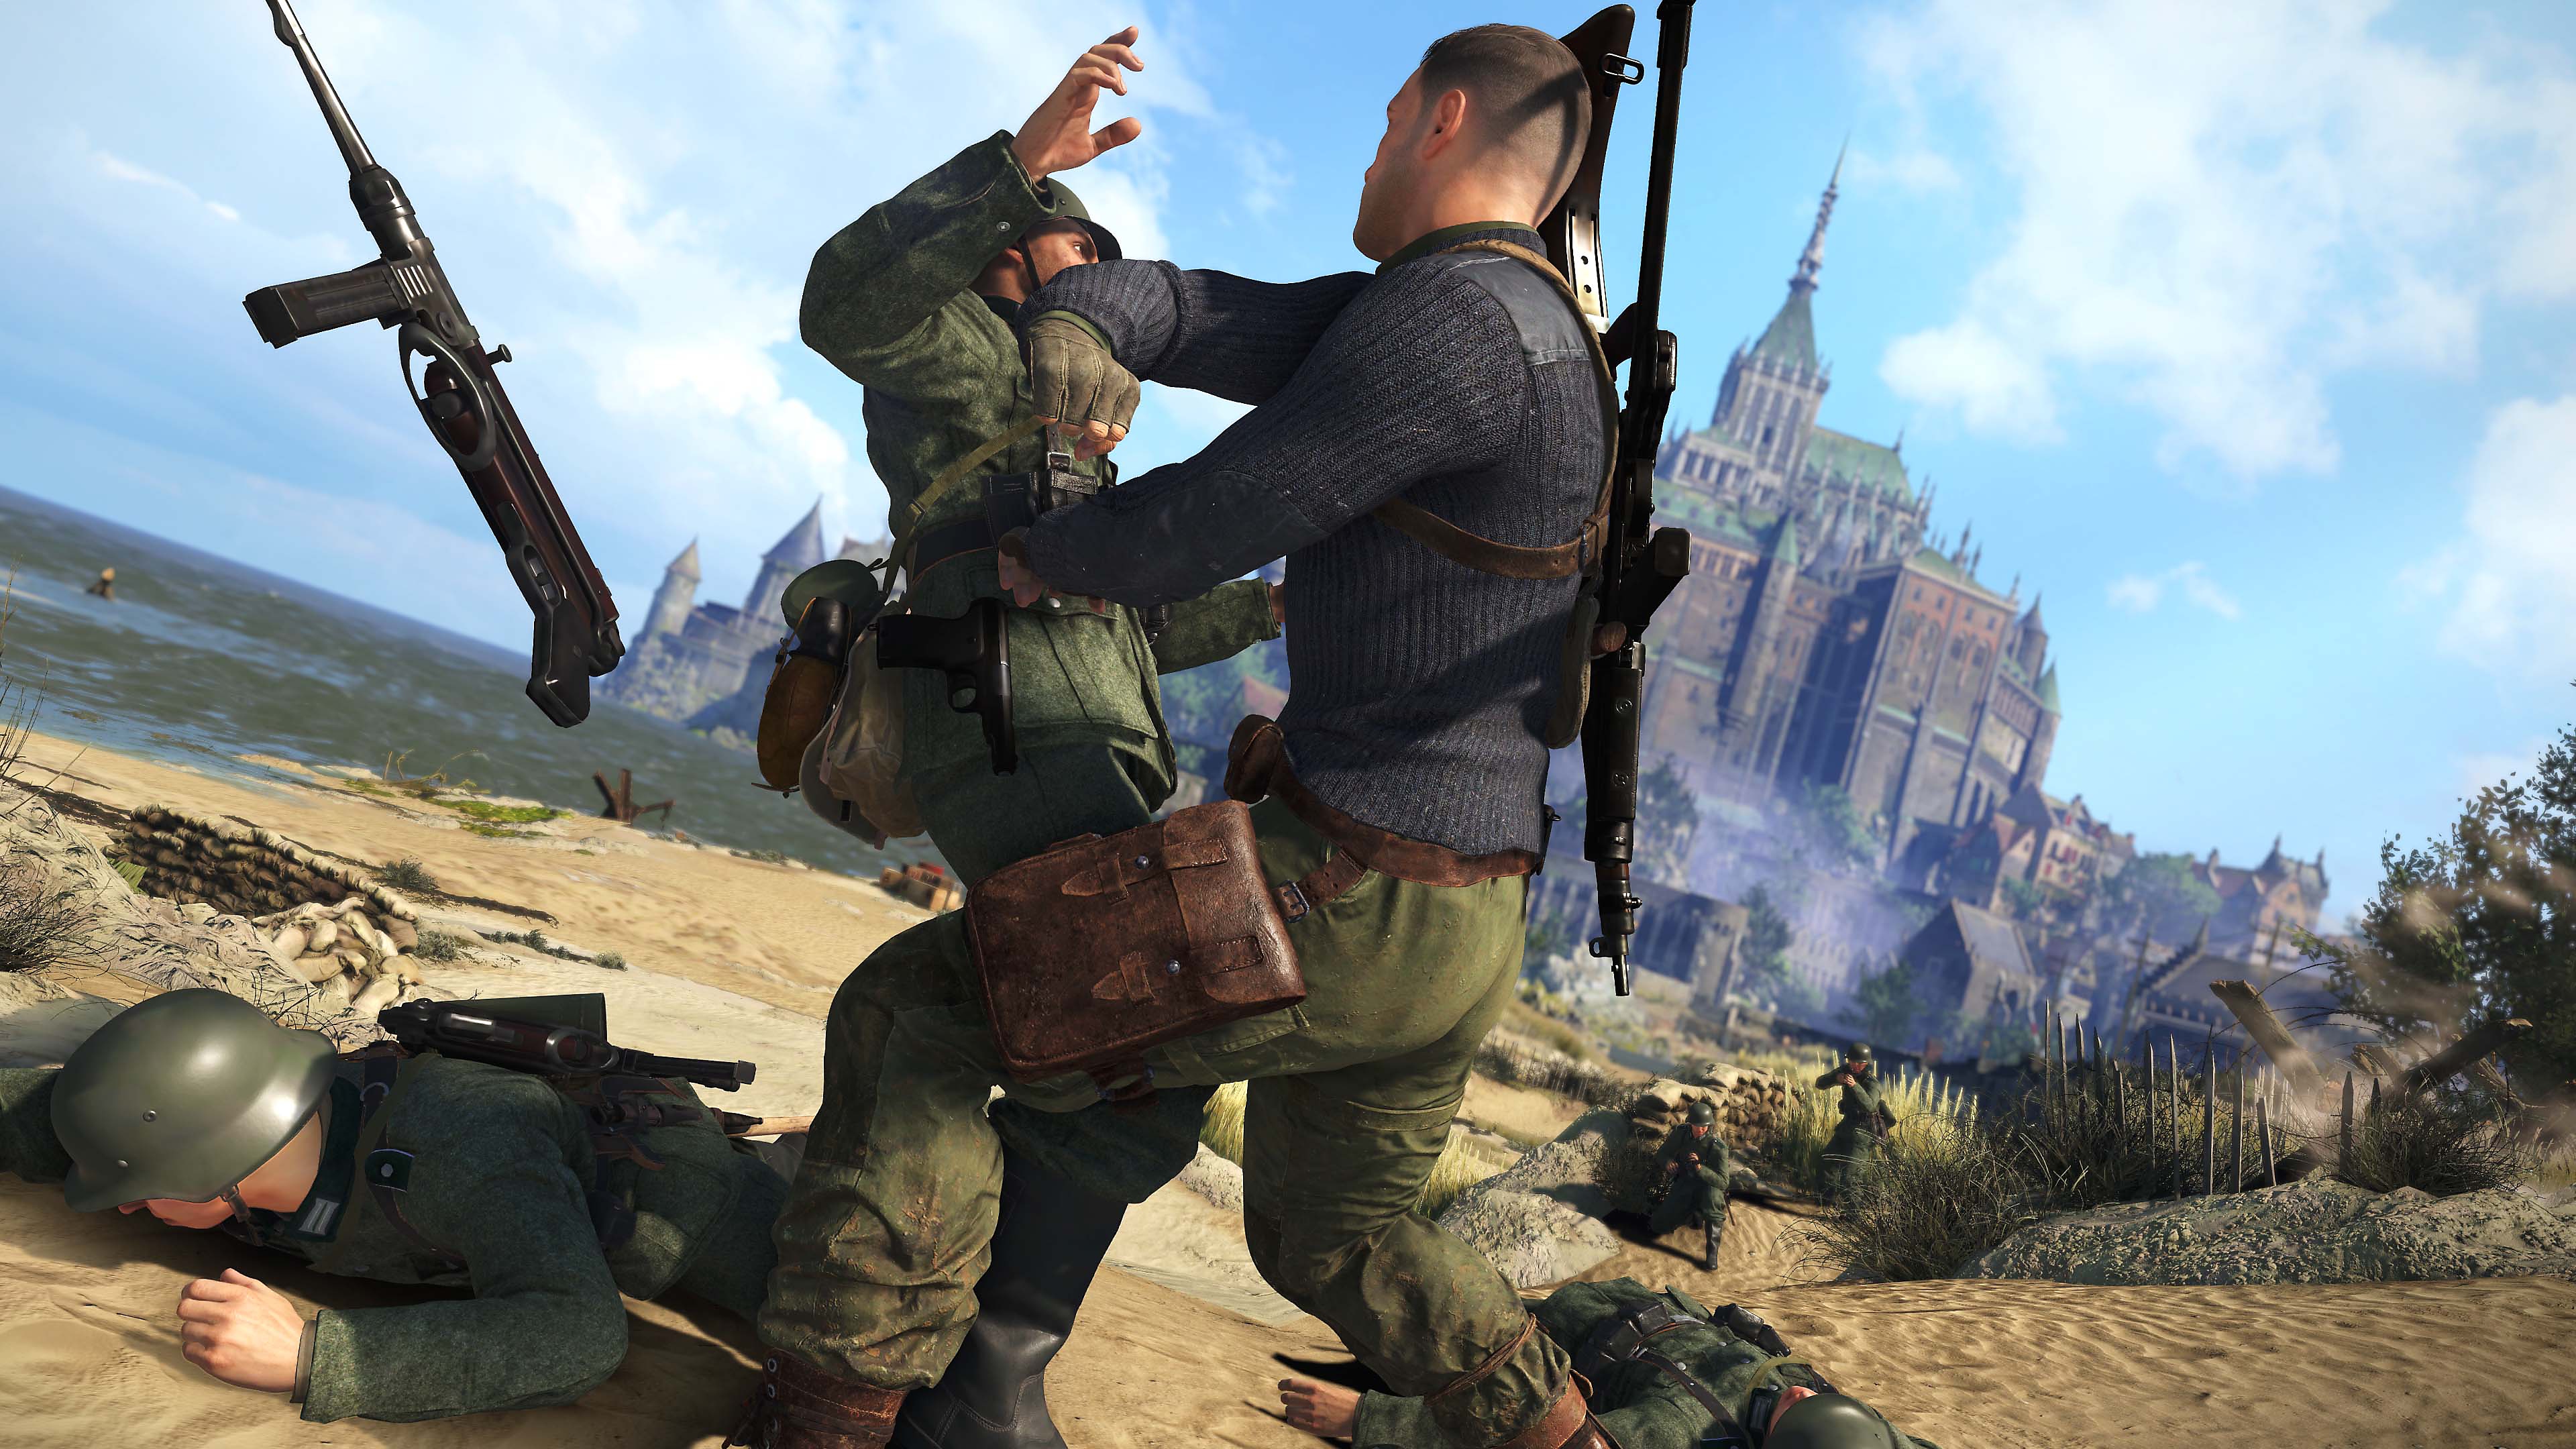 Captura de pantalla de Sniper Elite 5 que muestra combate cuerpo a cuerpo